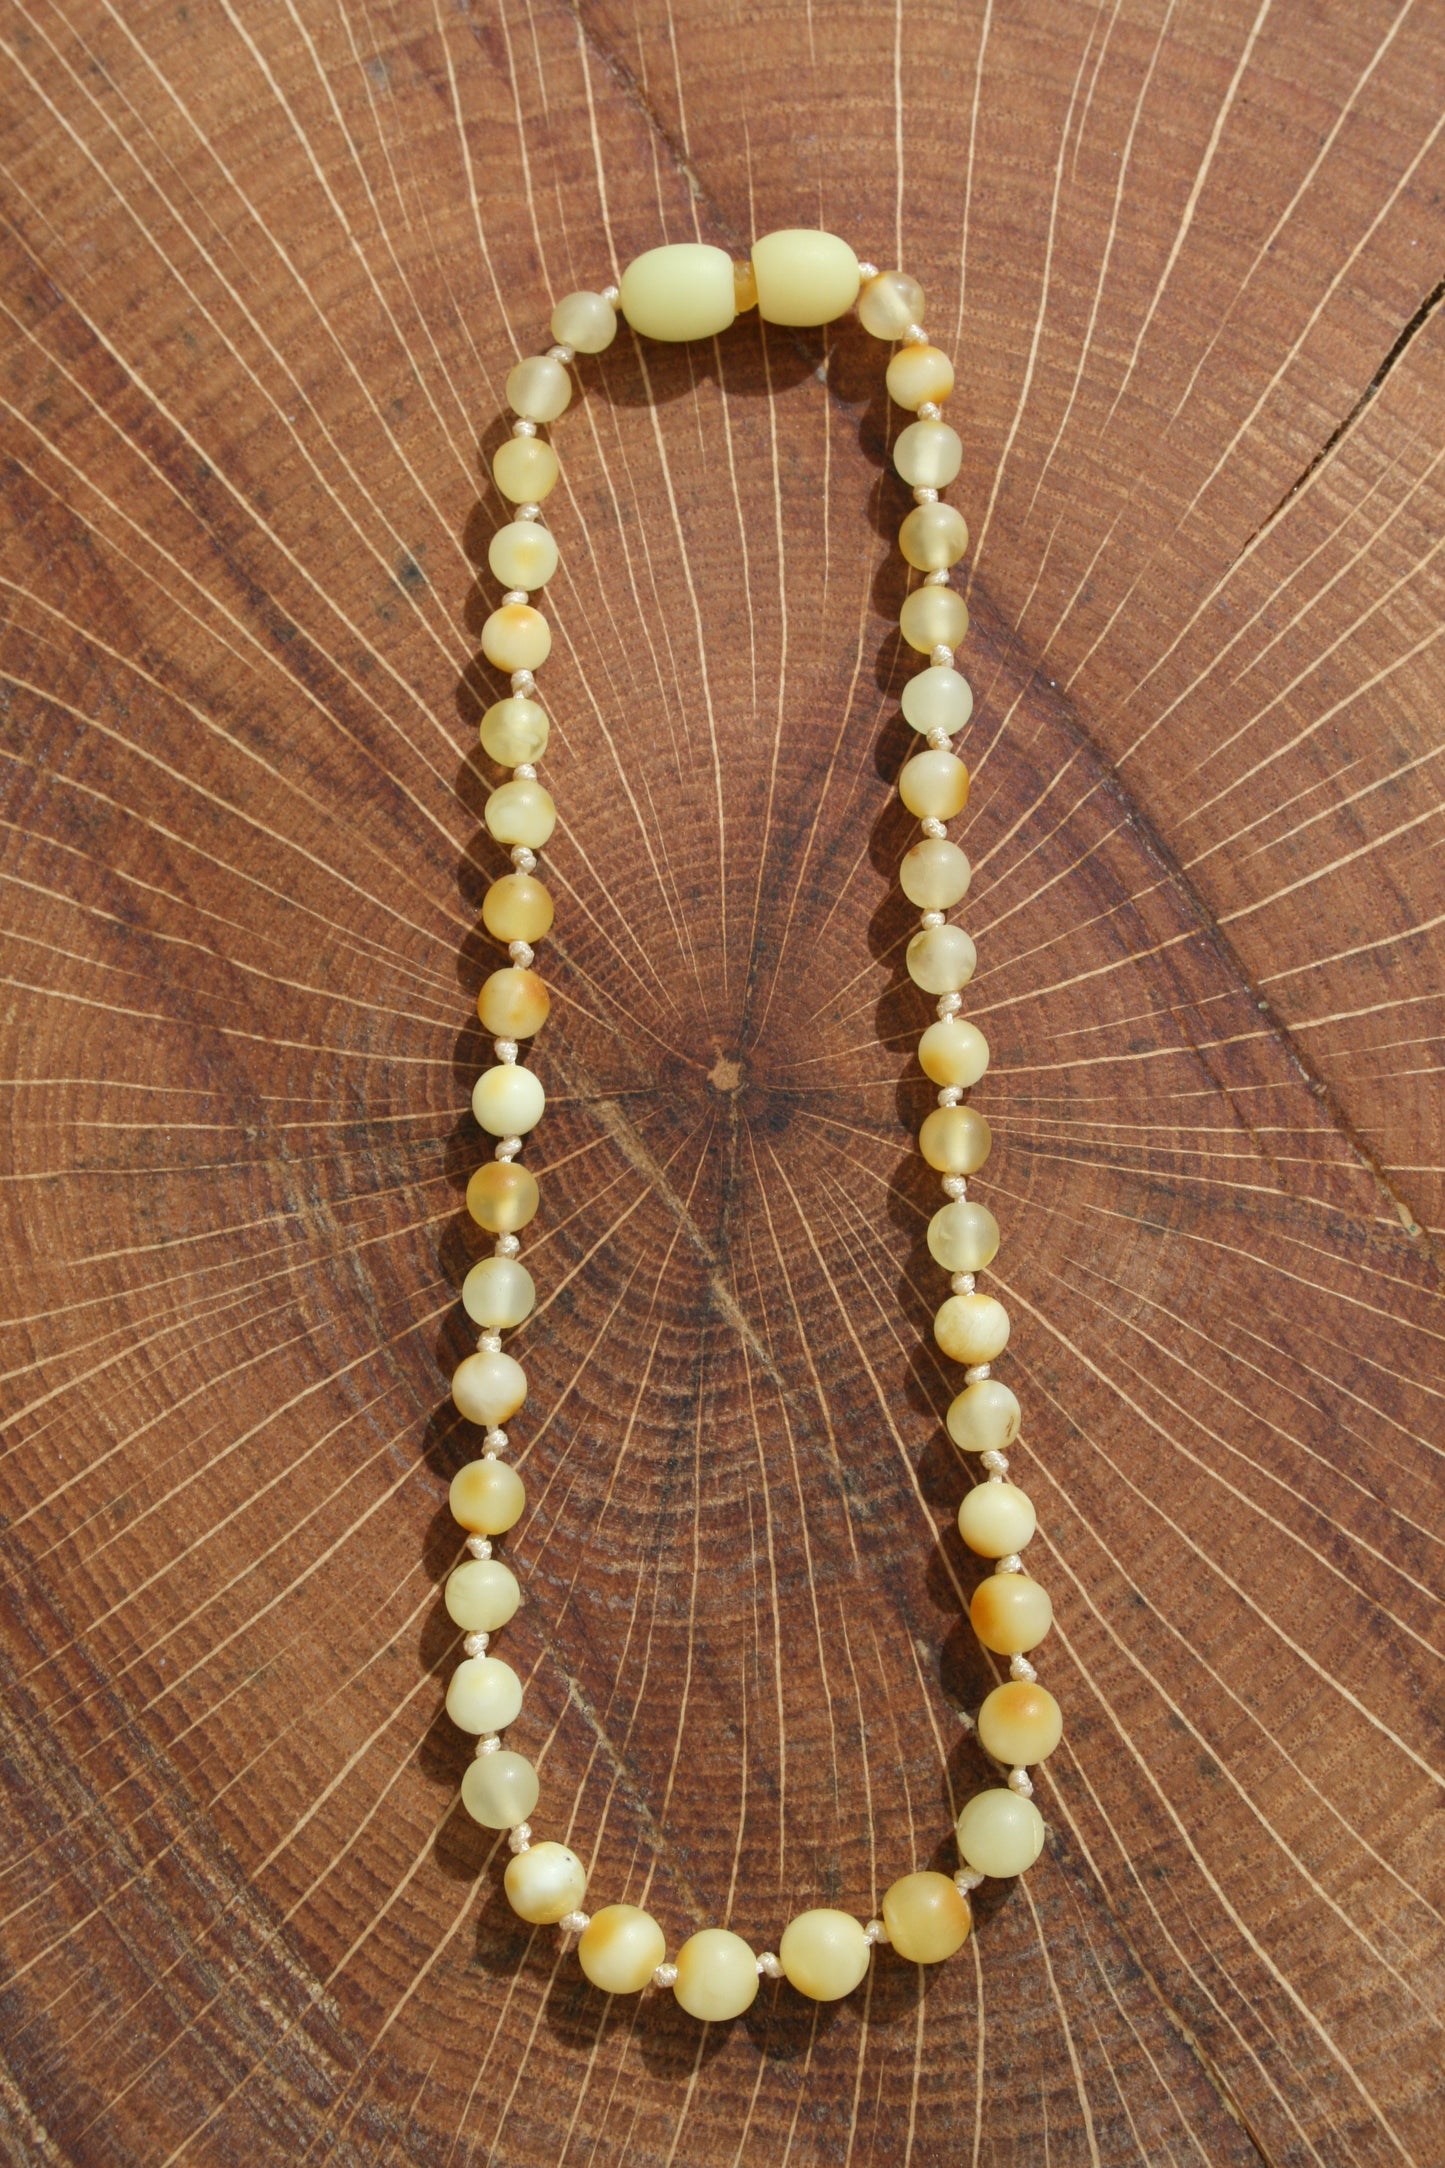 Milky Round Unpolished Baltic Amber Necklace, Anklet, or Bracelet